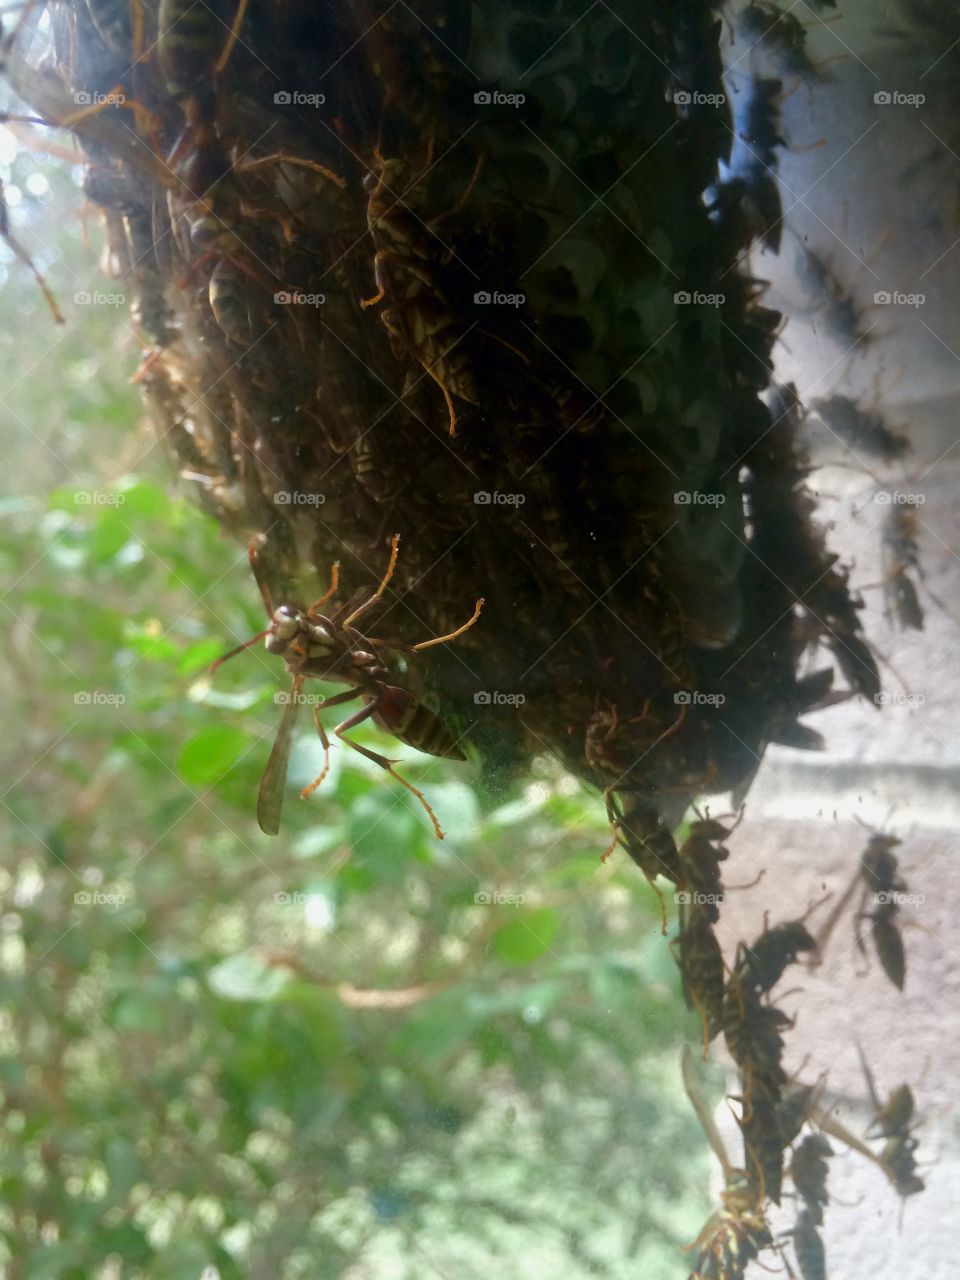 Wasps nest on window. Wasps nest on window